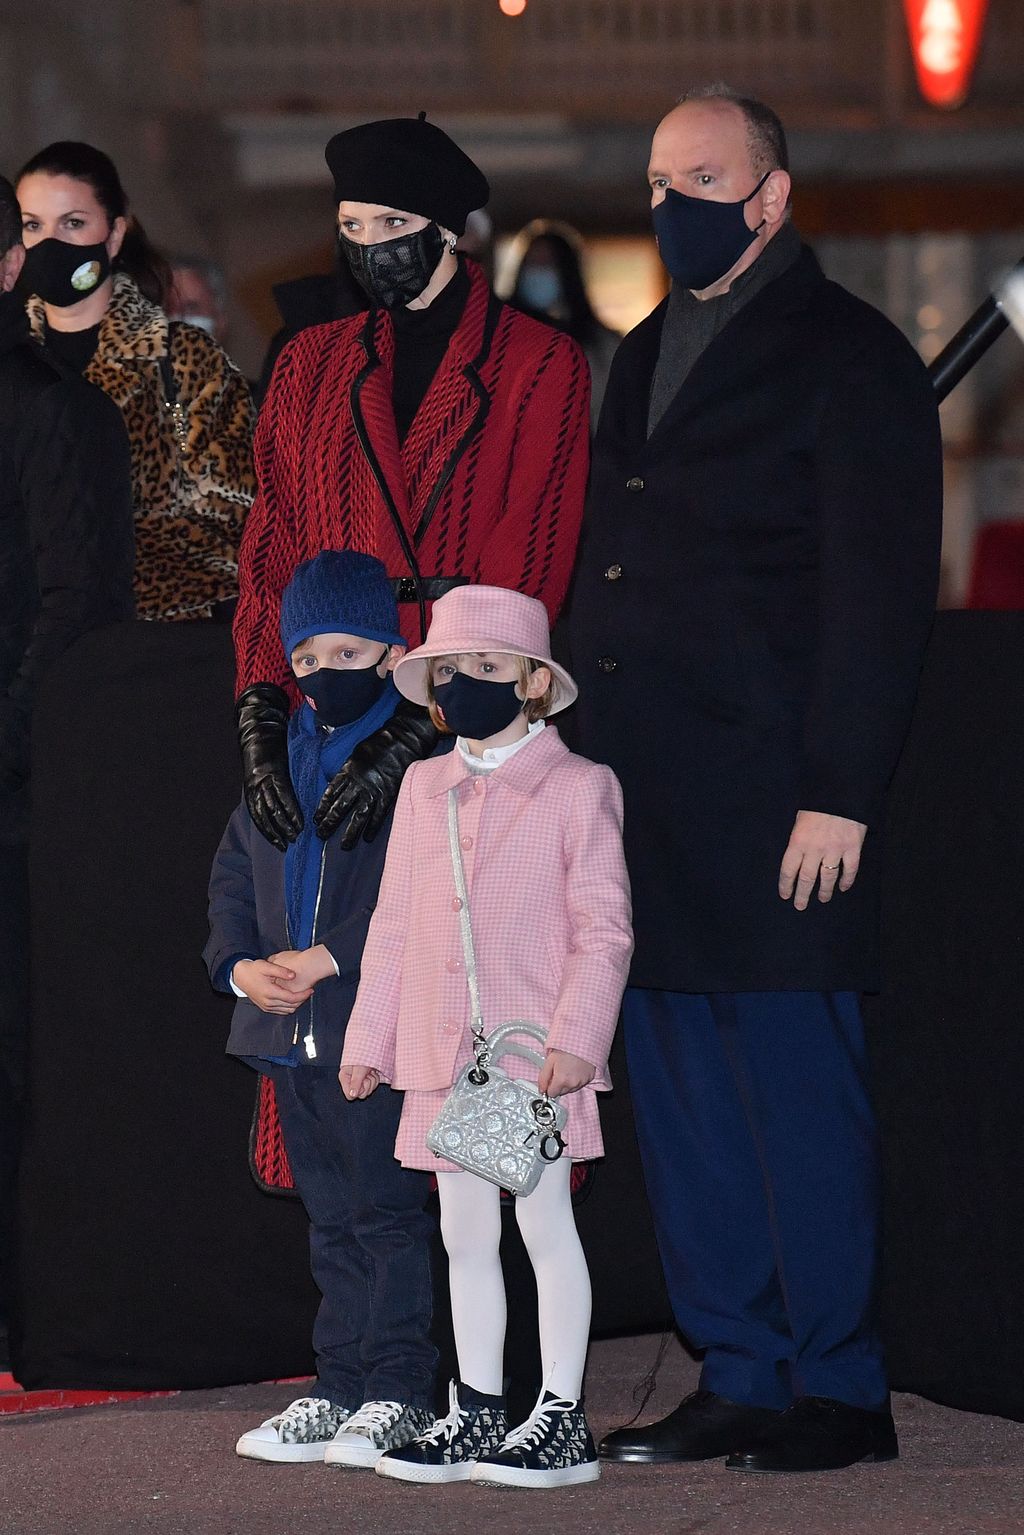 Monacon prinsessa Gabriella, 6, varasti show’n: Sytytti venettä soihdulla, kaksoisveli katseli tumput suorina